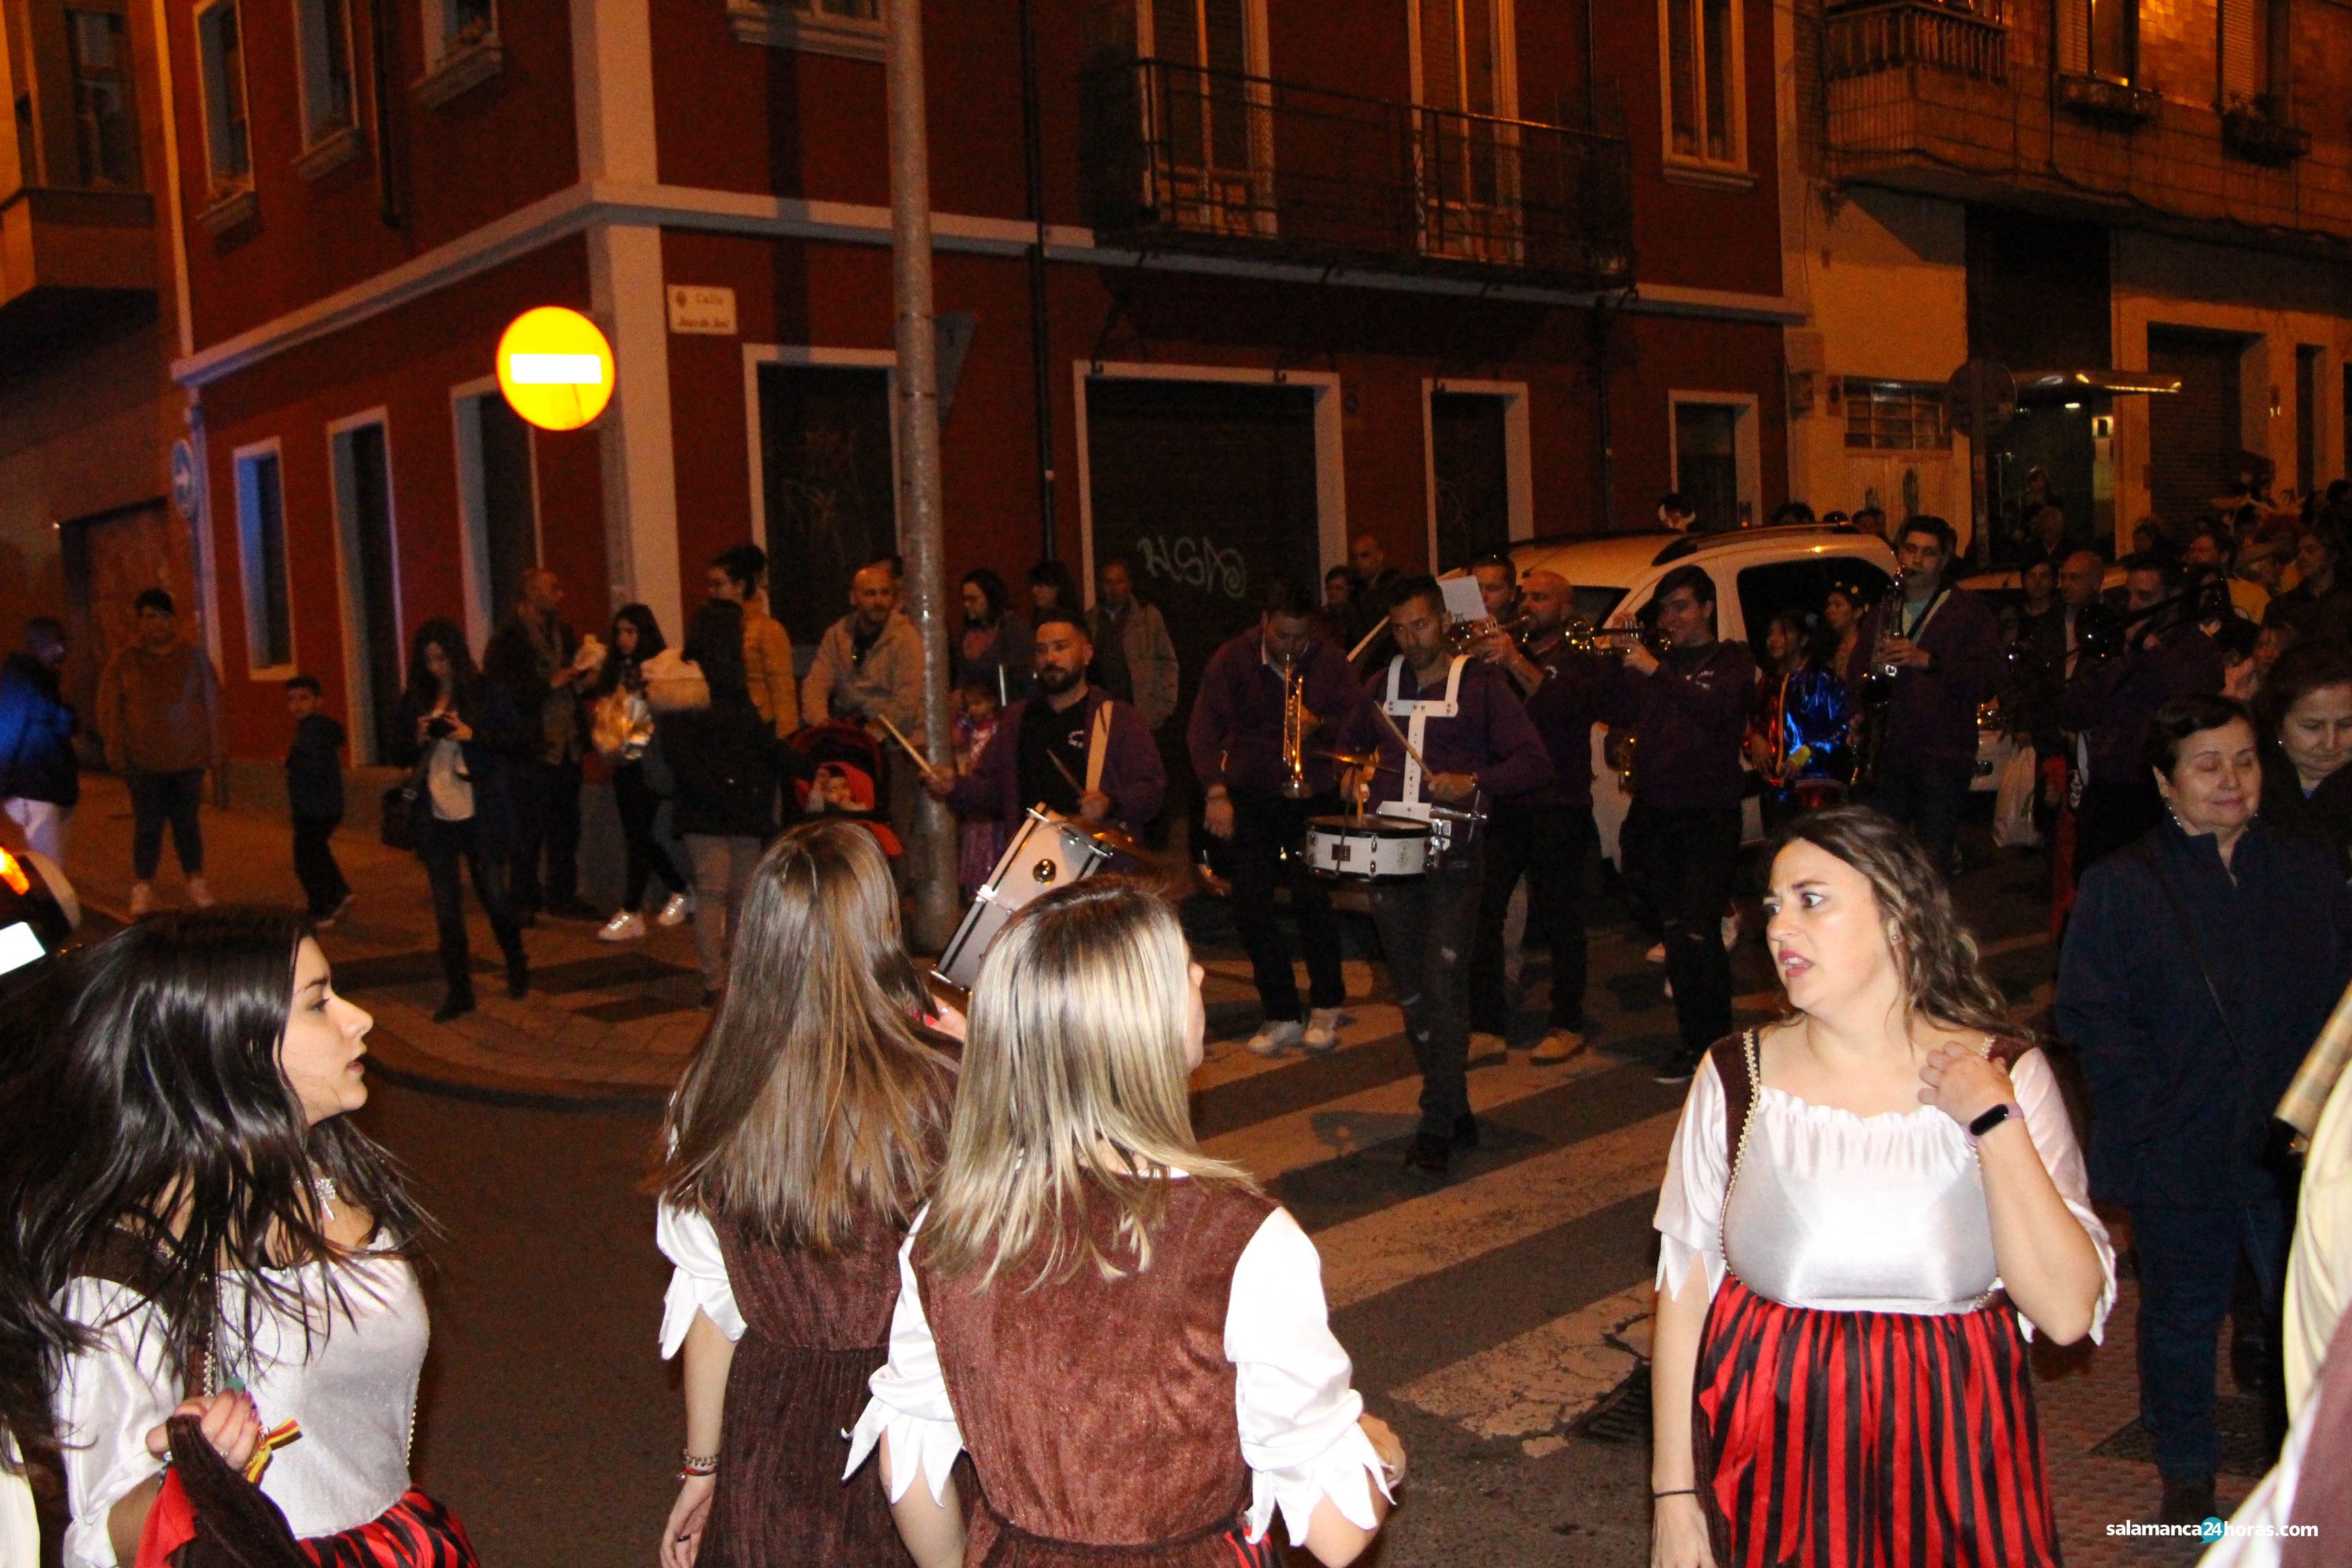  Carnaval barrio del oeste (24 02 2020) (49) 